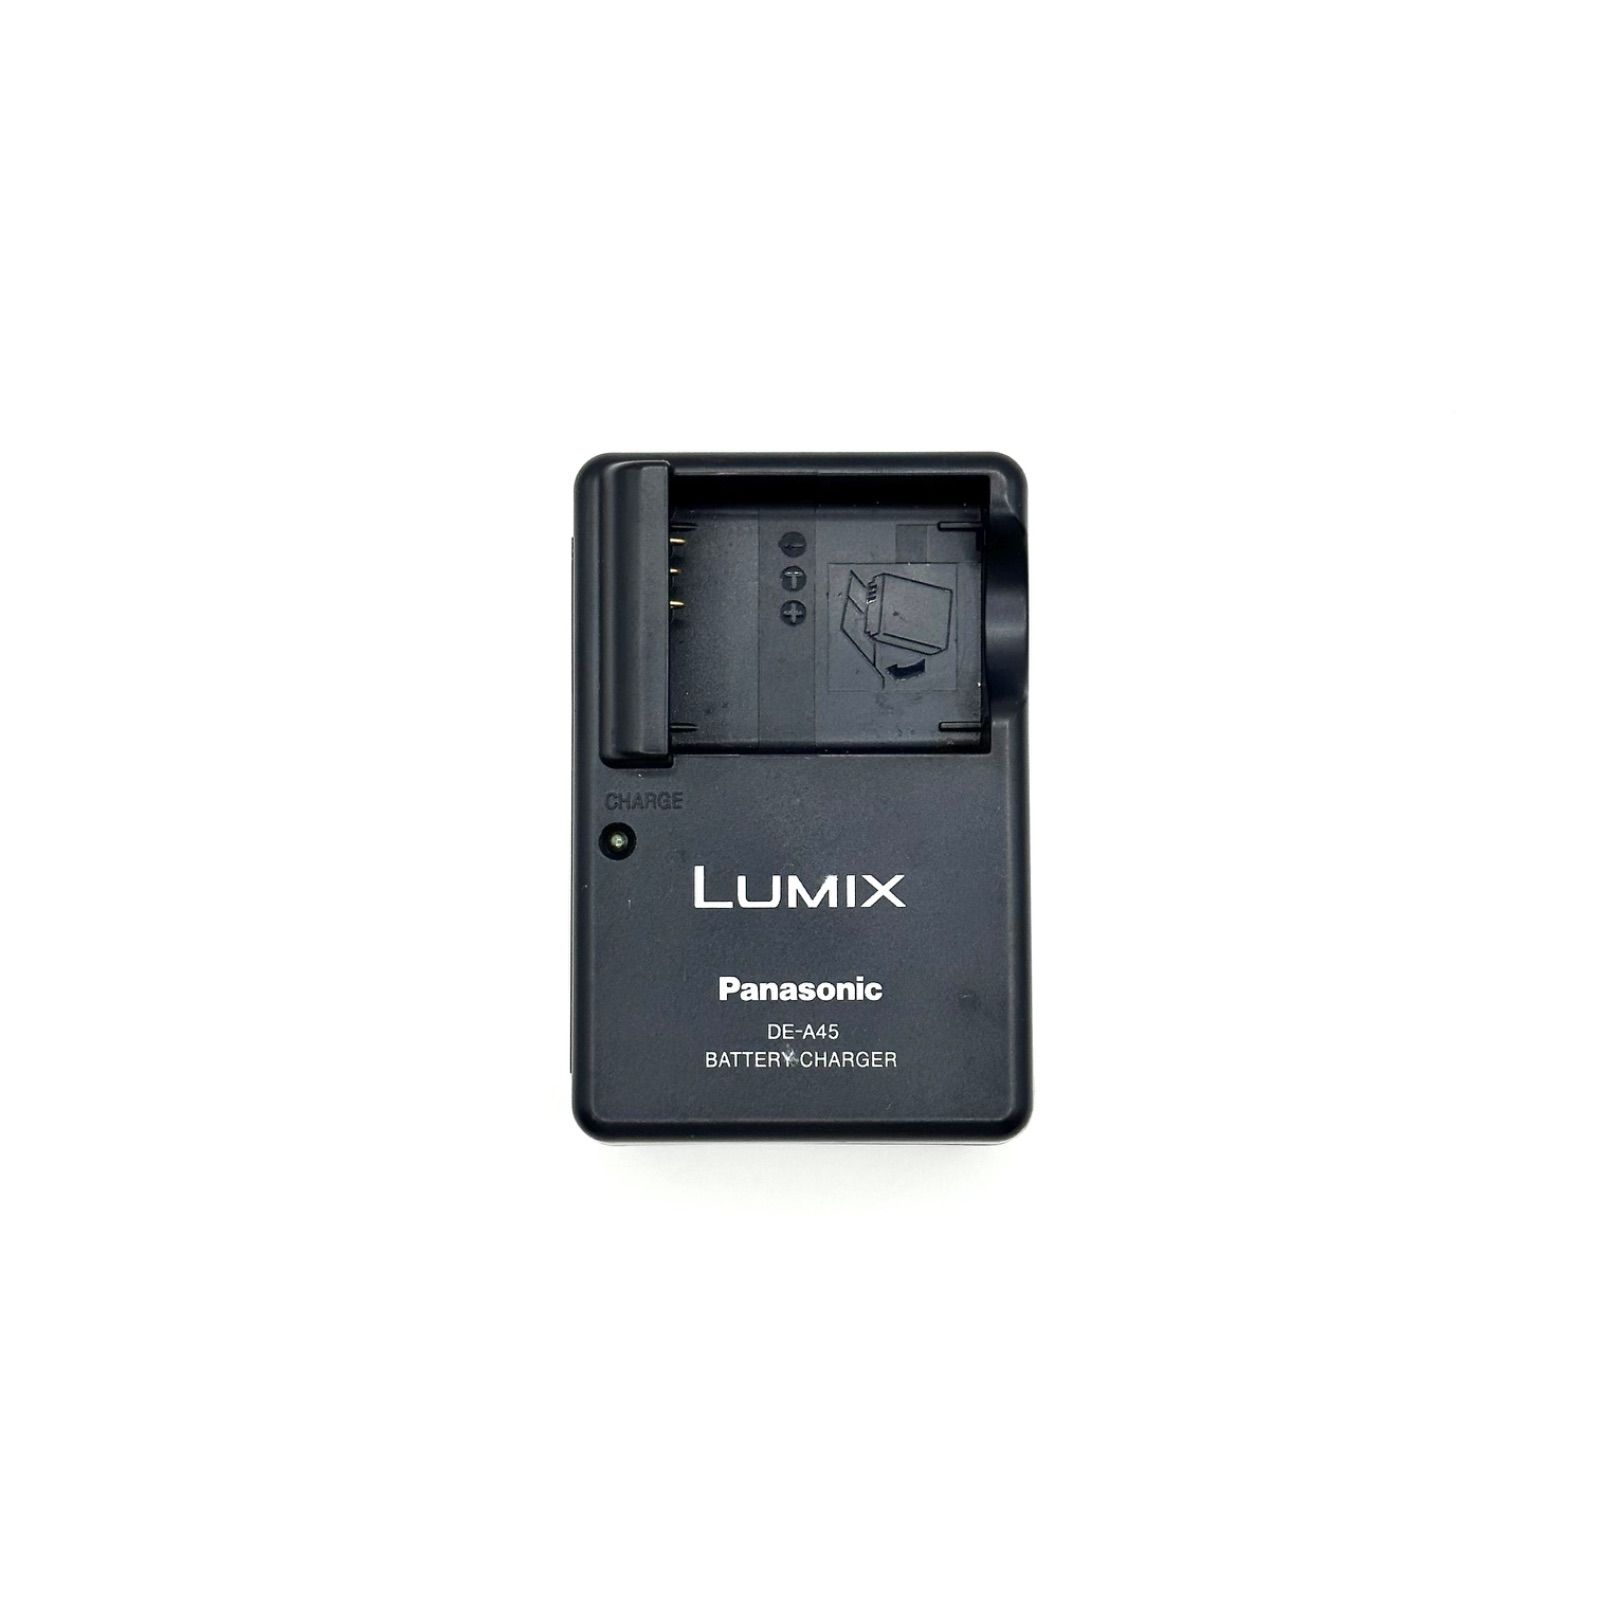 LUMIX DE-A45 Panasonic パナソニック 純正 チャージャー 充電器 バッテリーチャージャー 充電 デジカメ デジタルカメラ カメラ  リチウムイオンバッテリー DMW-BCD10 など 1004-1025 きりん メルカリ